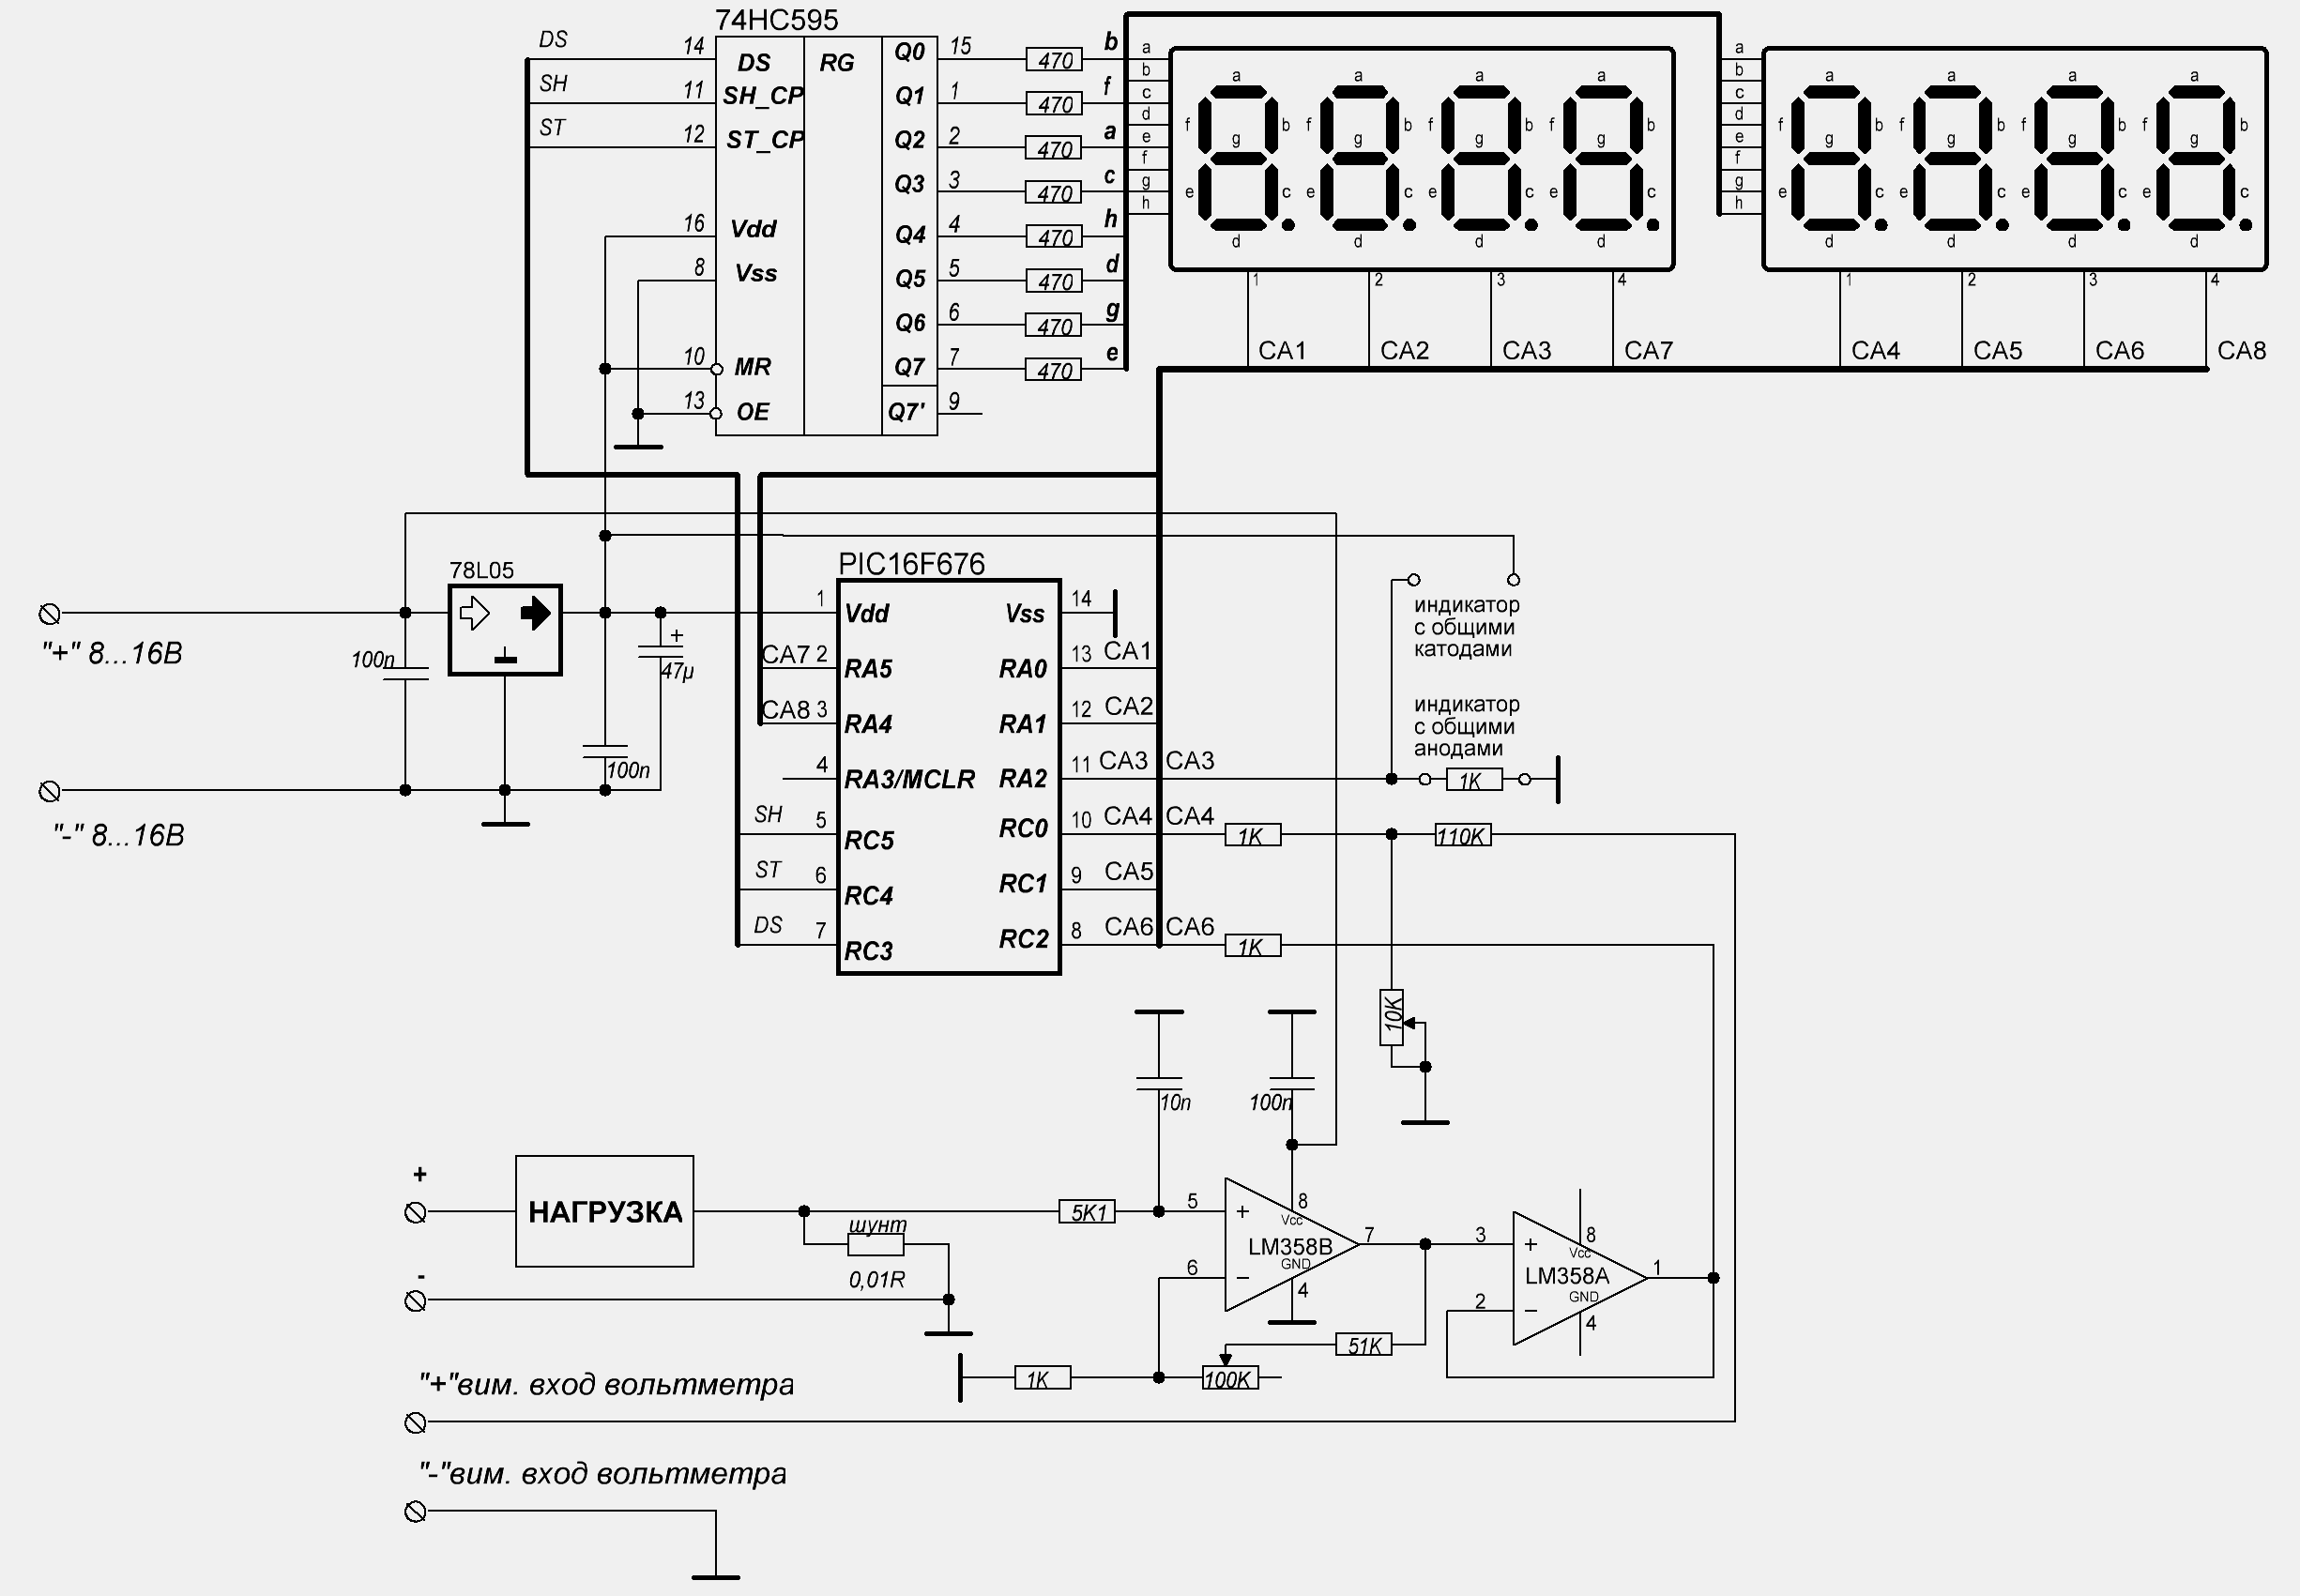 ВольтАмперметр на PIC16F676 и семисегментных индикаторах